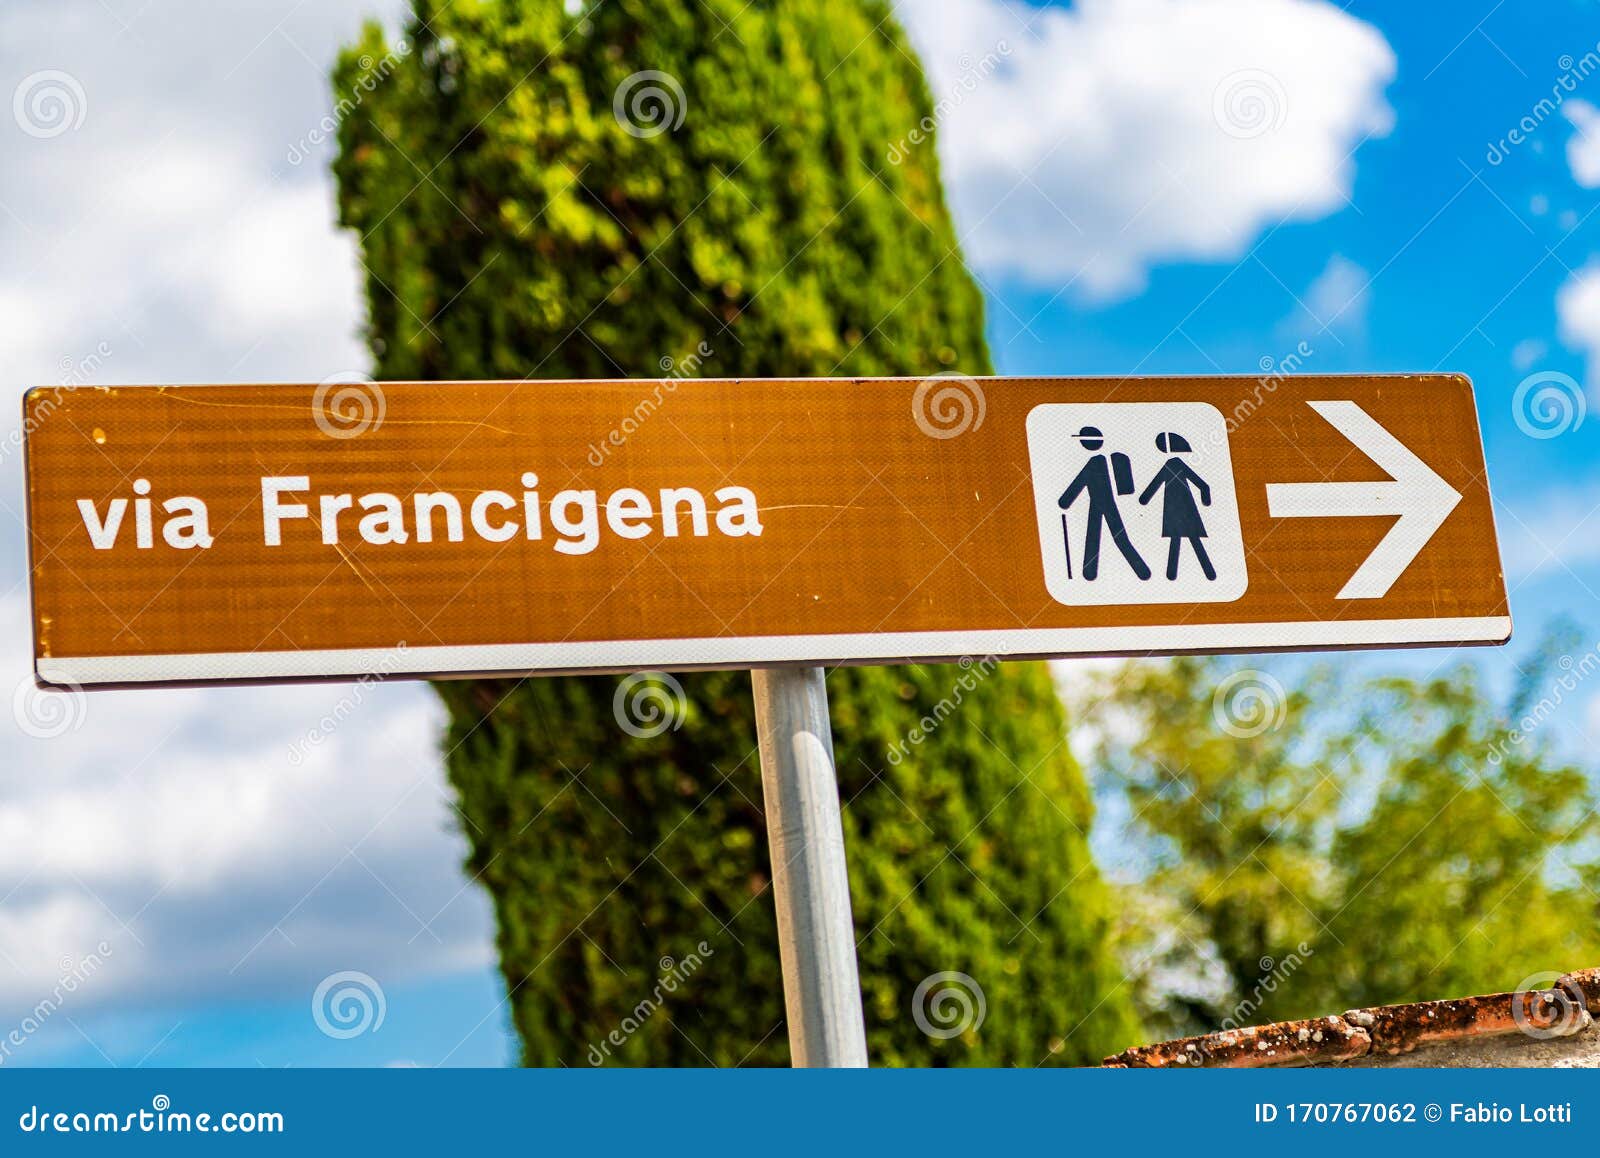 sign of via francigena